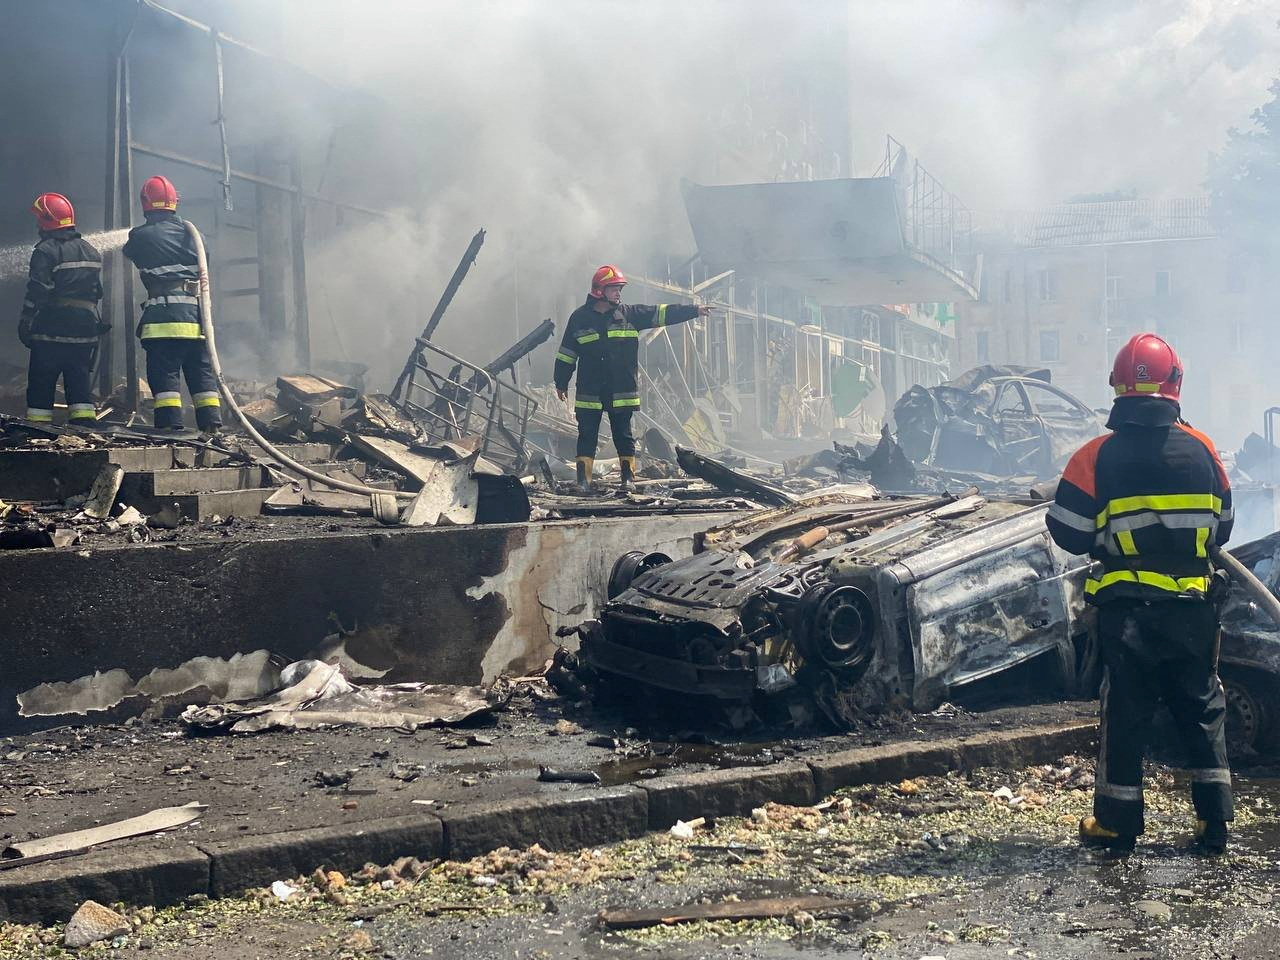 El ataque a Vinnytsia se produjo luego de que la oficina presidencial ucraniana reportó la muerte de cinco civiles en ataques rusos registrados en la víspera, que dejaron también ocho heridos.

